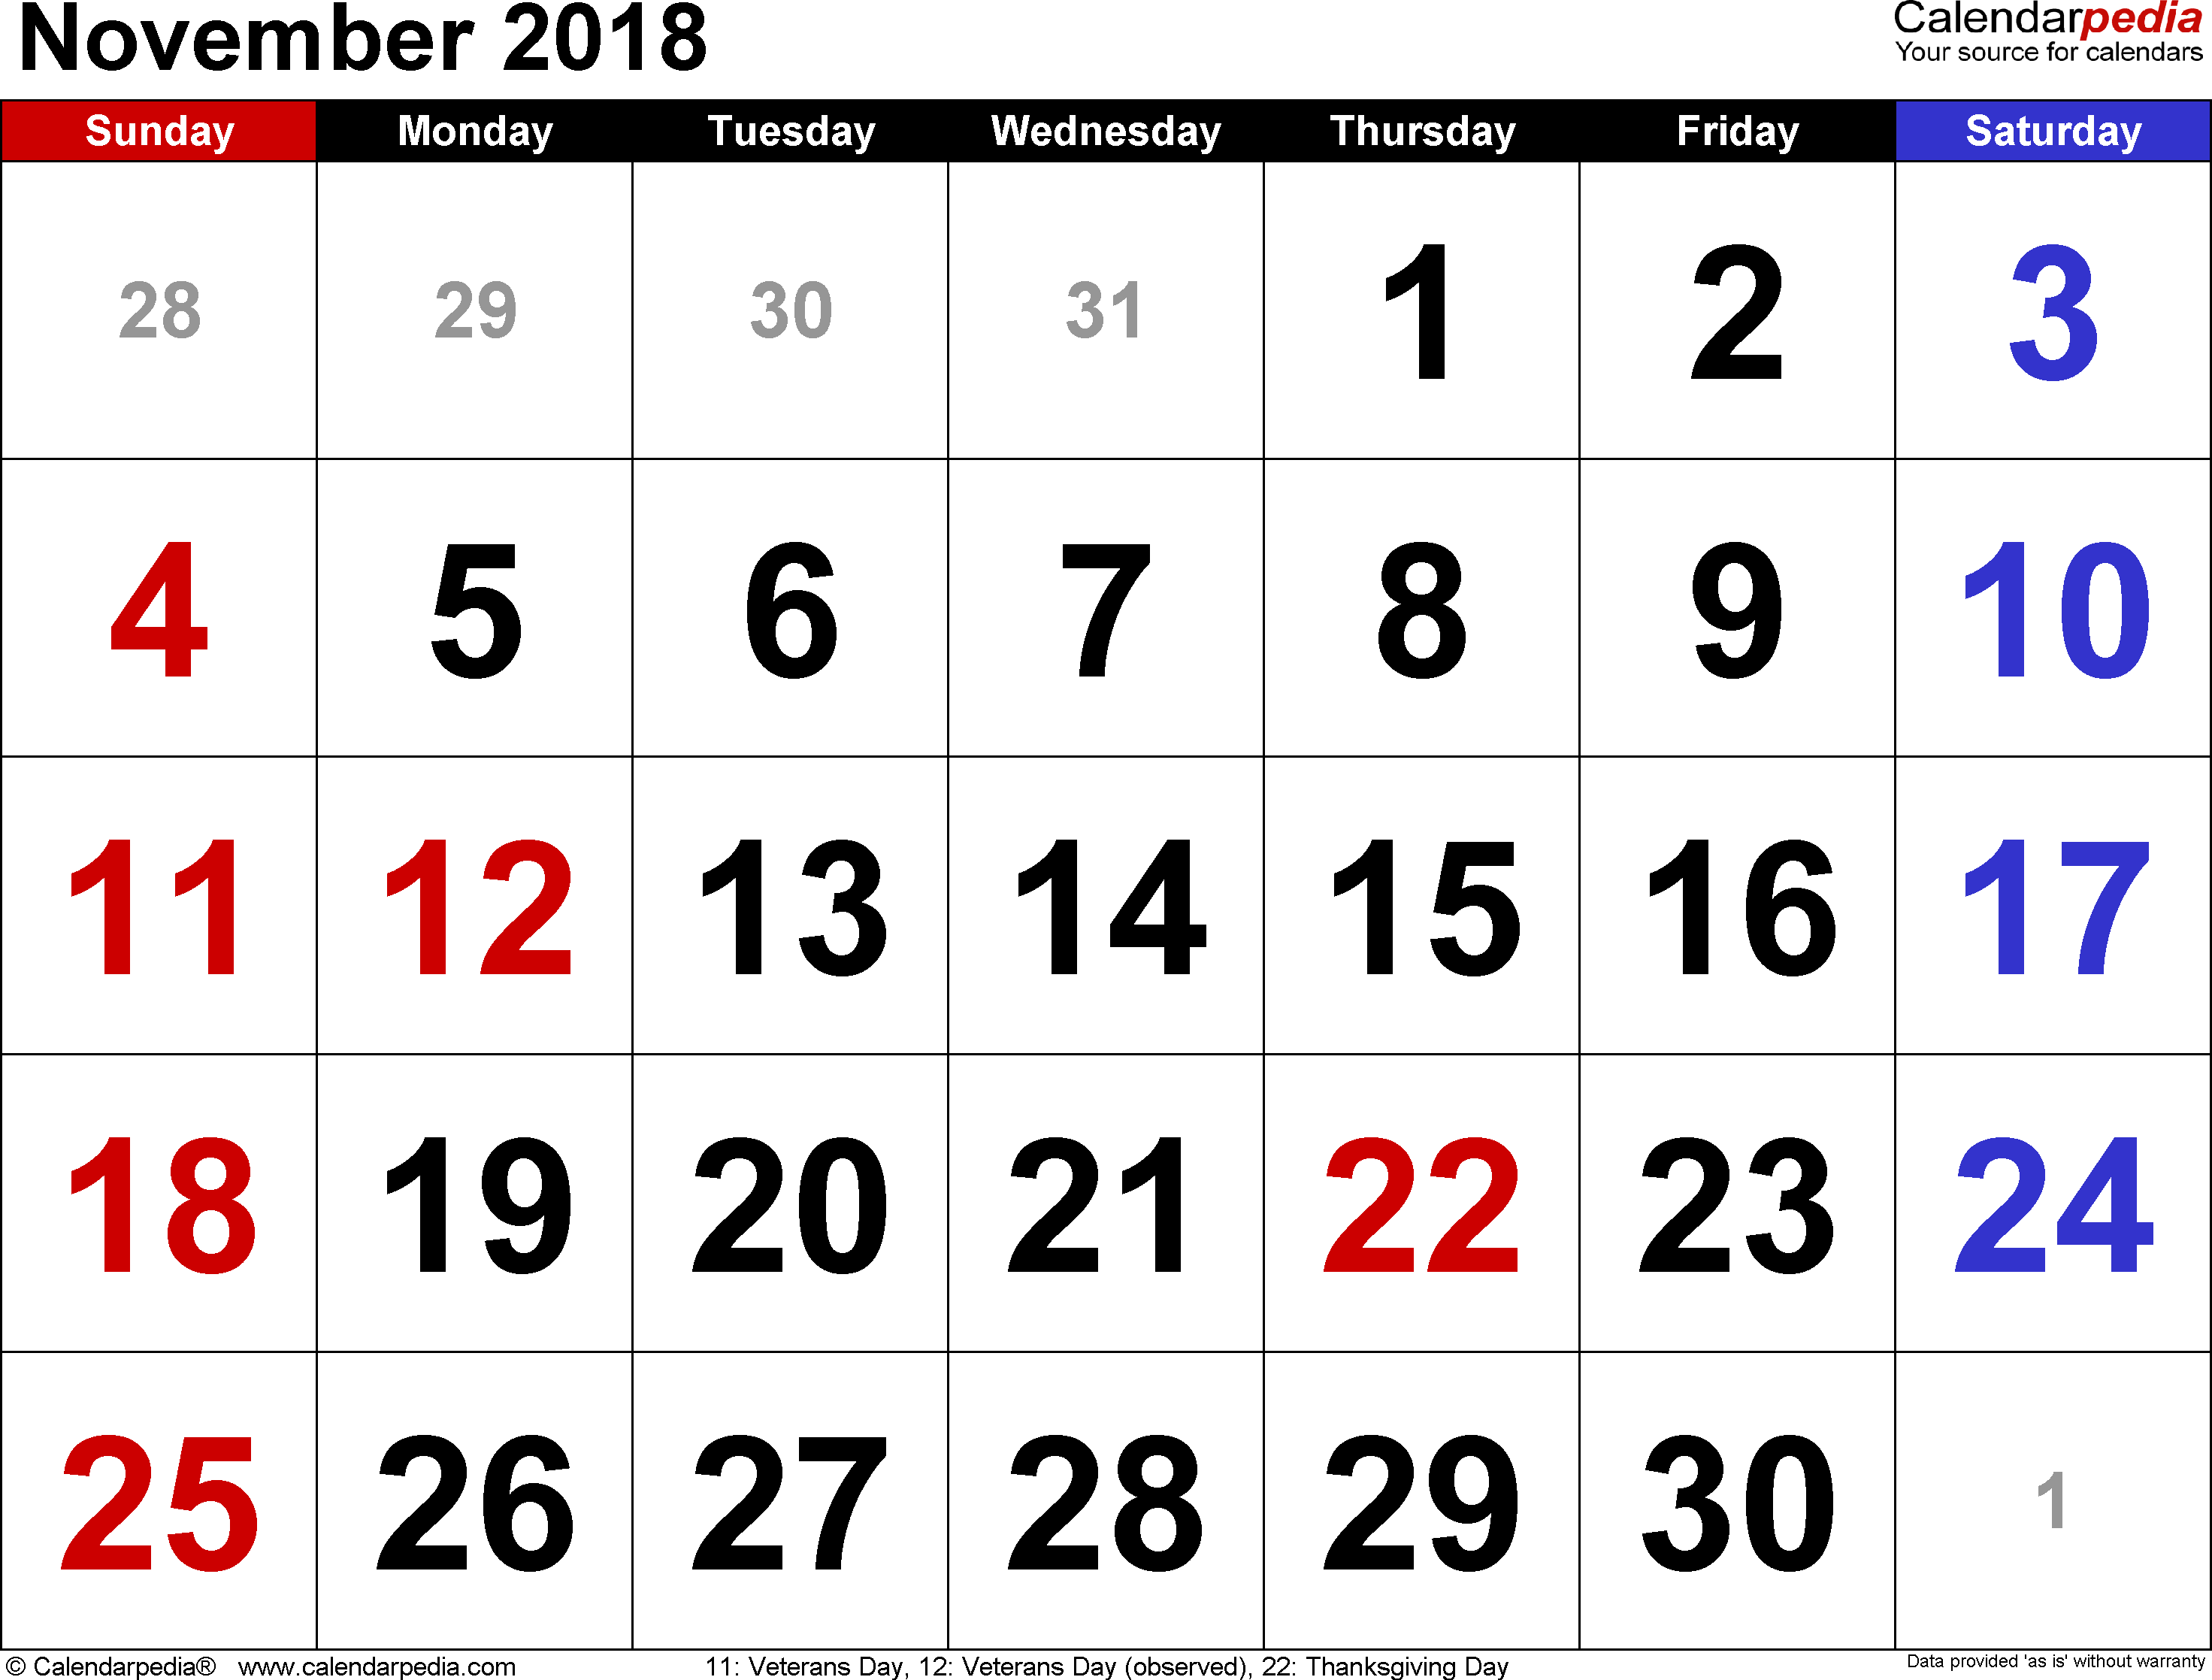 Download Calendar 2019 as PNG